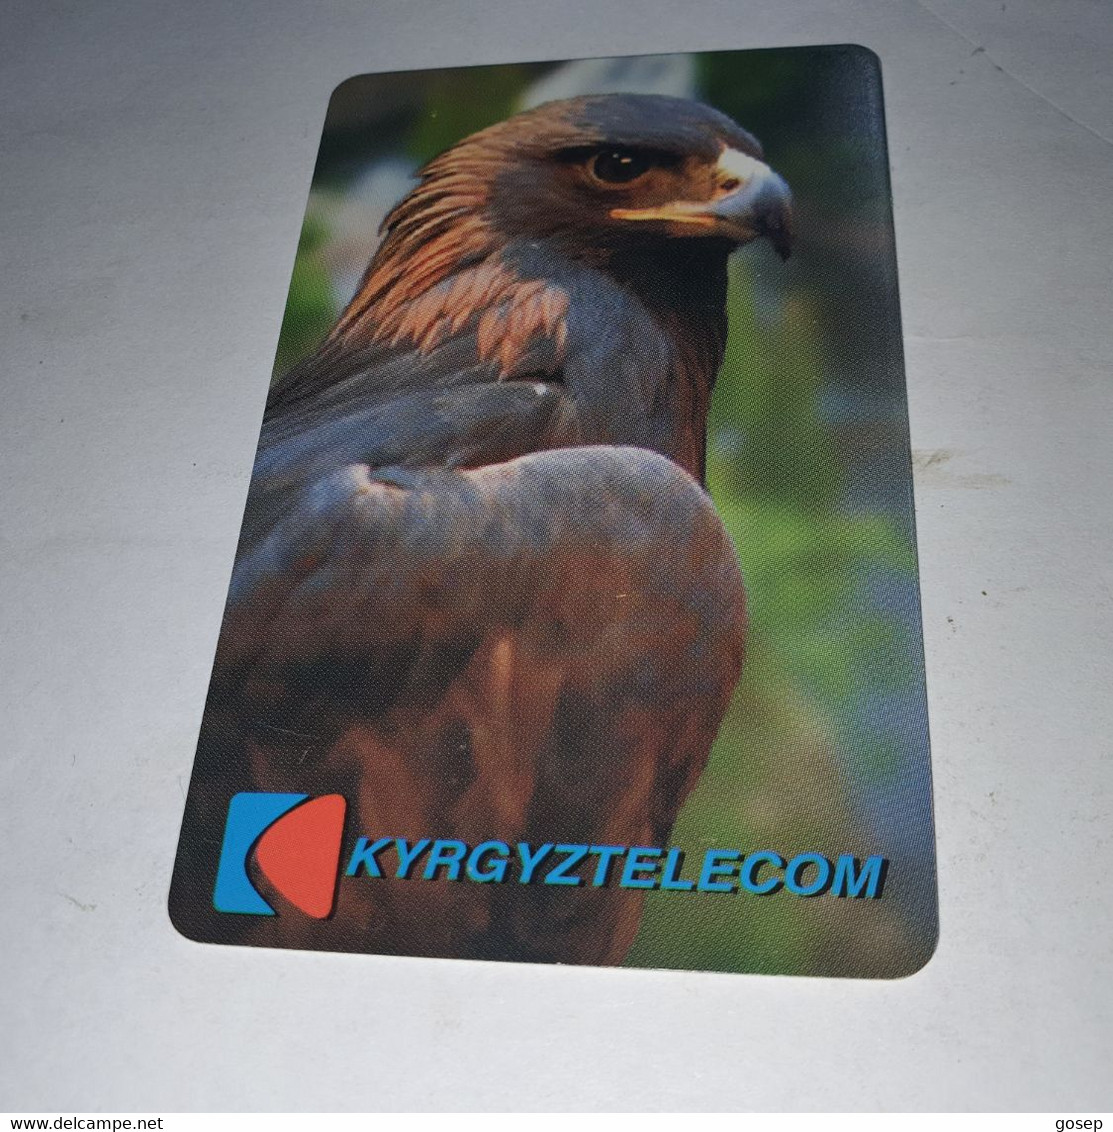 KYRGYZSTAN-(KG-KYR-0010)-bird of prey3-(29)-(400units)-(00196723)-(tirage-10.000)-used card+1card prepiad free